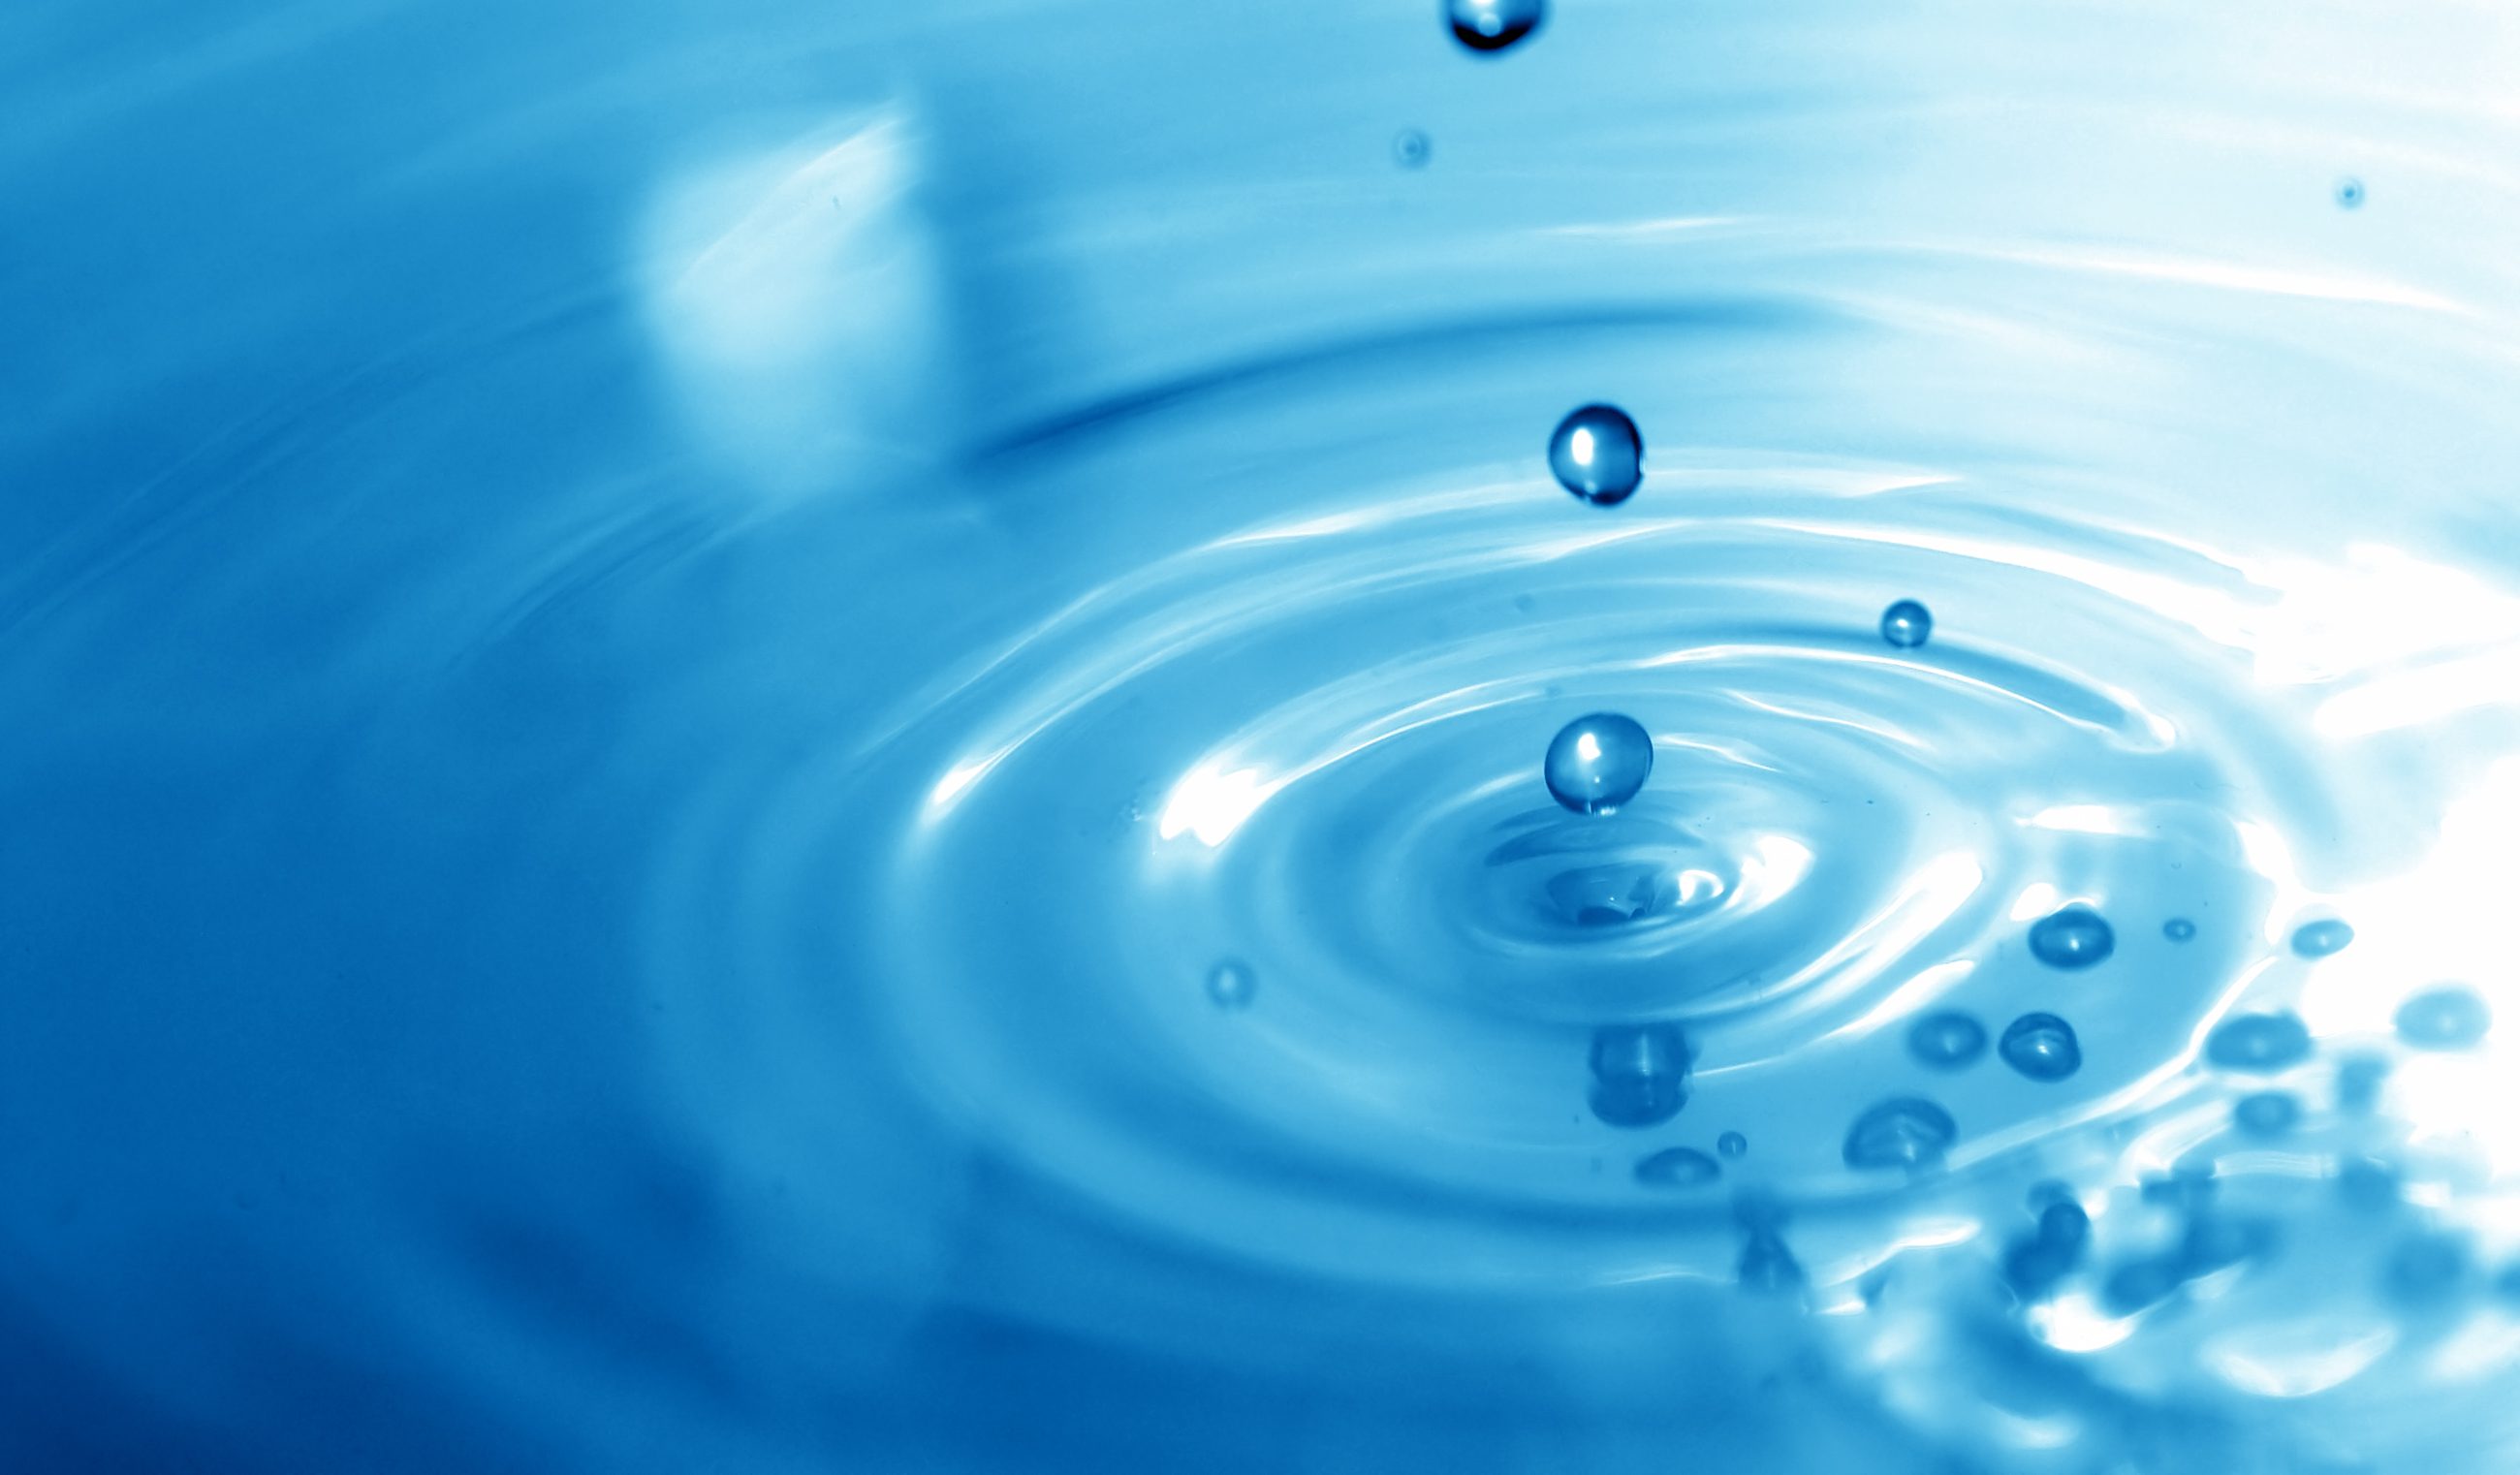 Сток жидкости. Сток воды. Капля падает в воду. Стоячая вода. Голубой фон с каплями воды внизу.